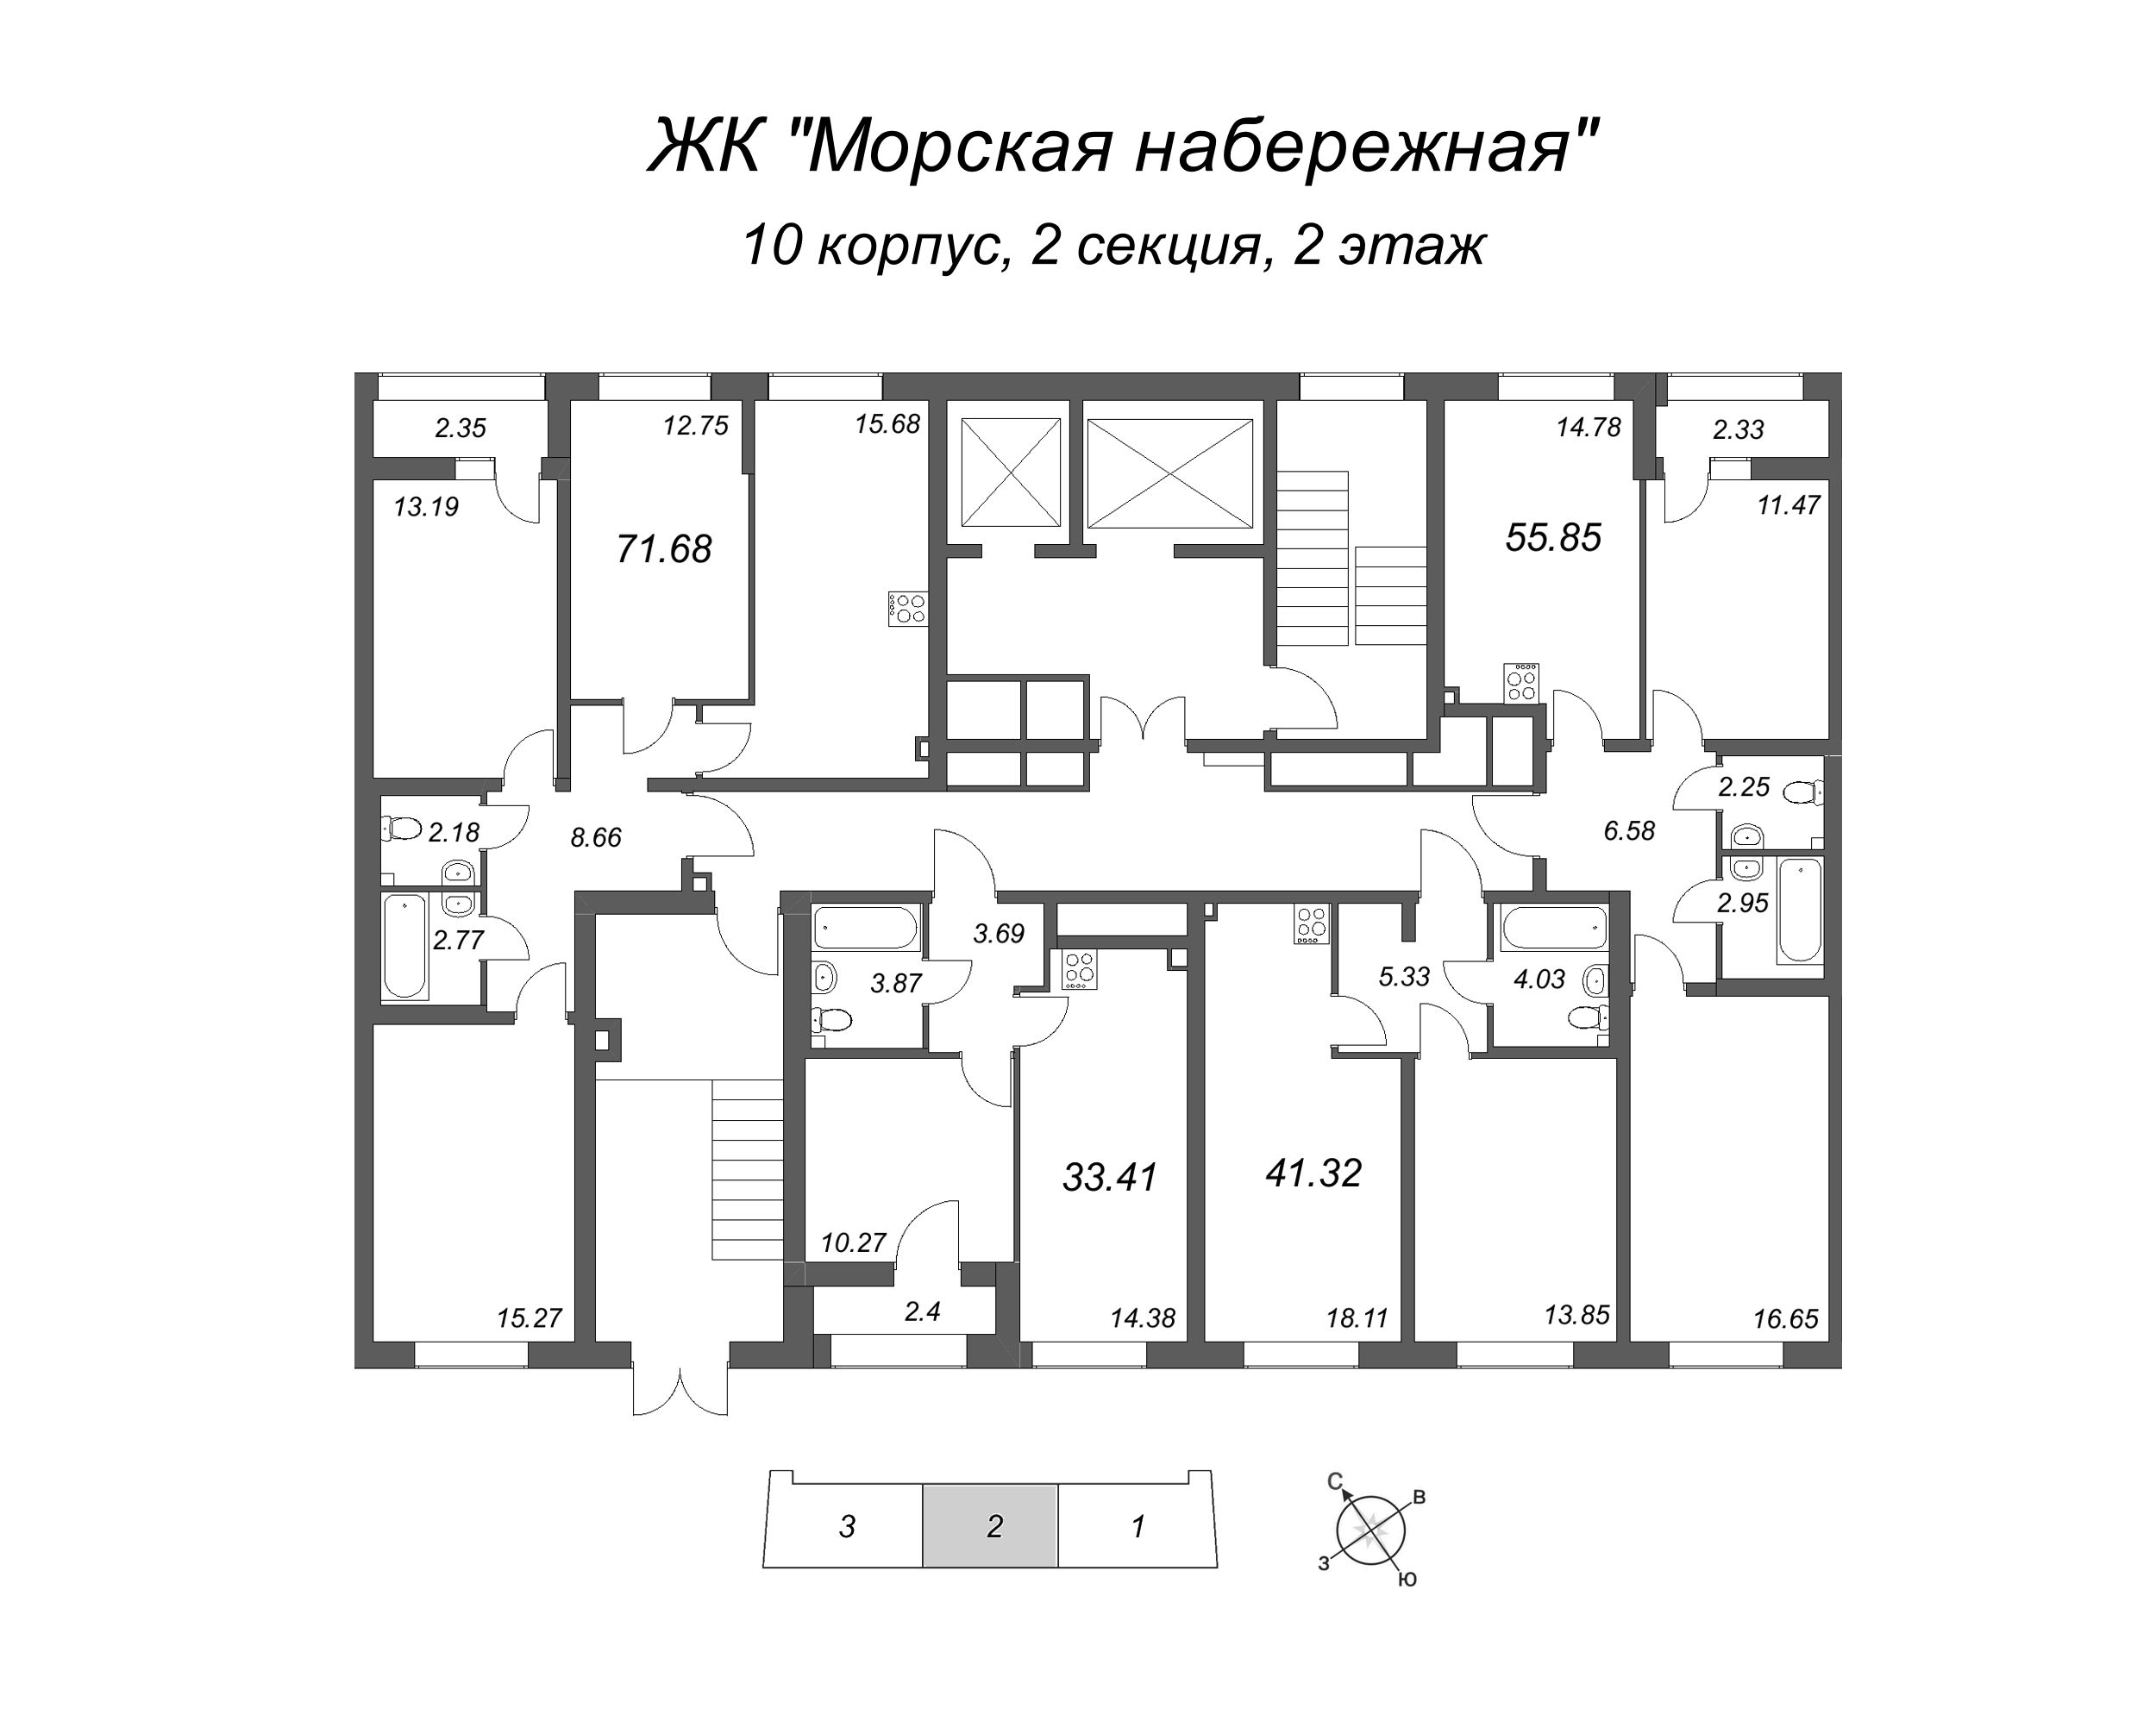 4-комнатная (Евро) квартира, 71.68 м² в ЖК "Морская набережная" - планировка этажа